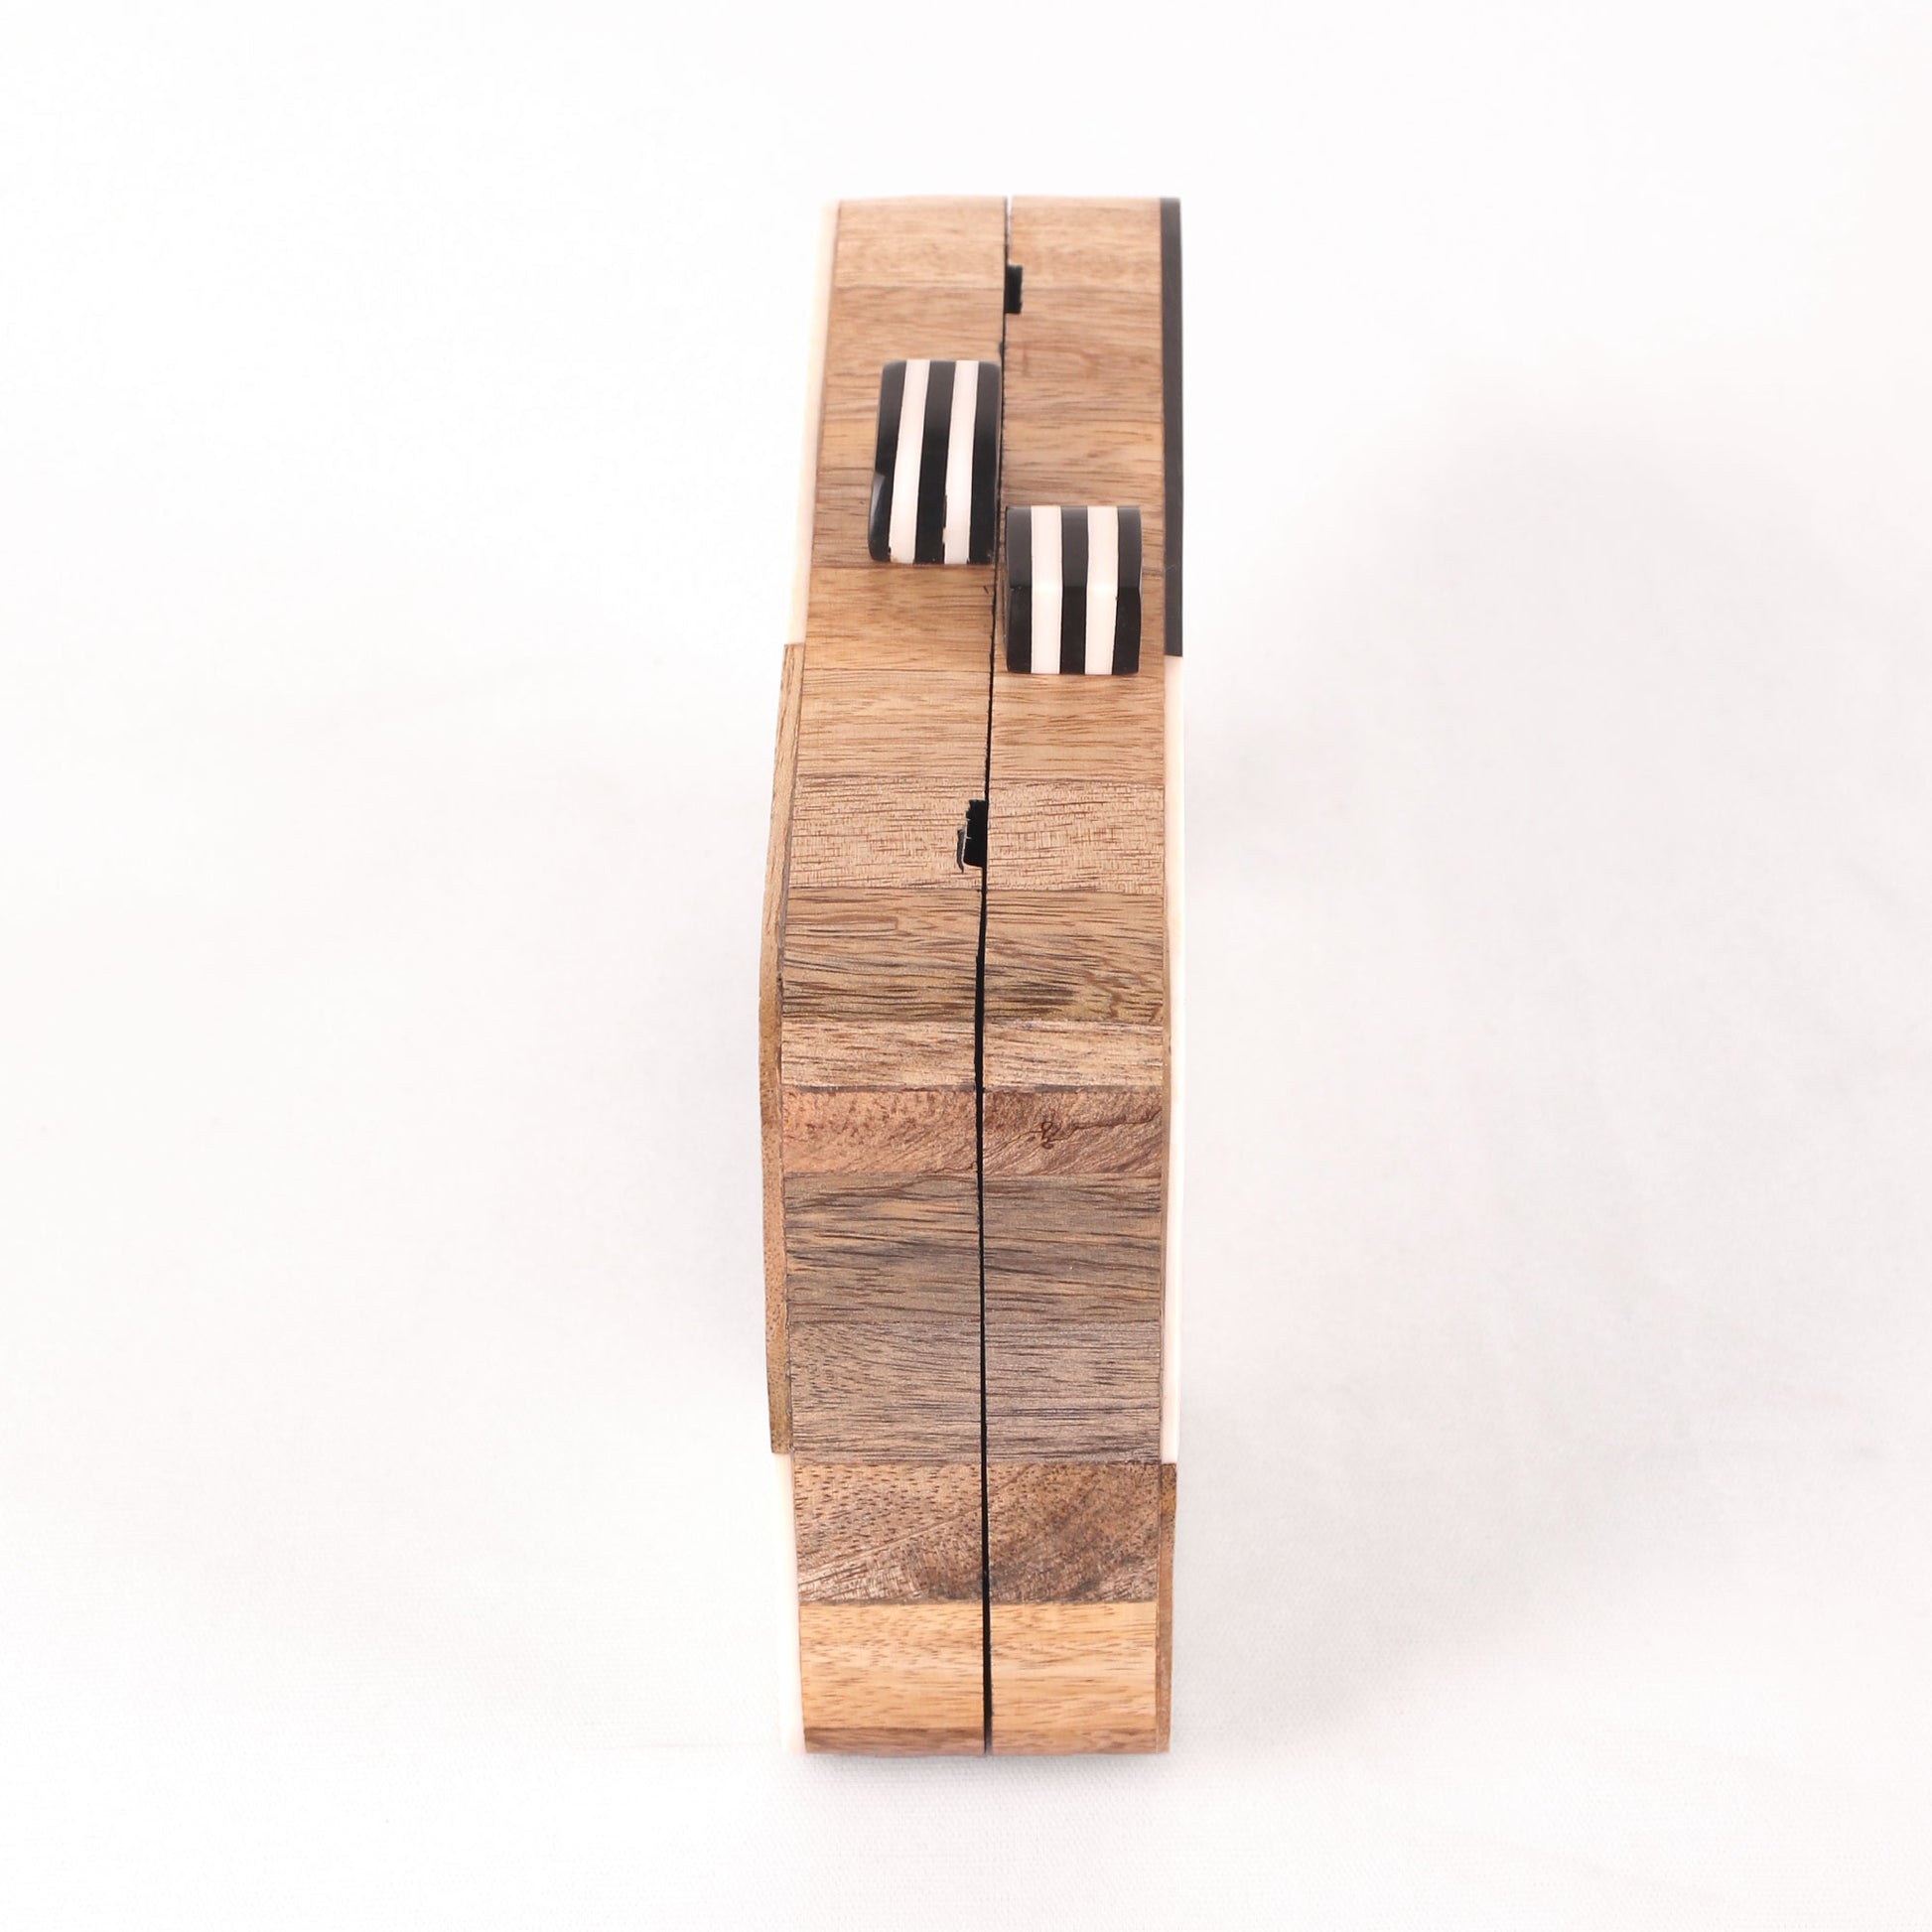 Clutch,The Chess Board Wooden Clutch - Cippele Multi Store